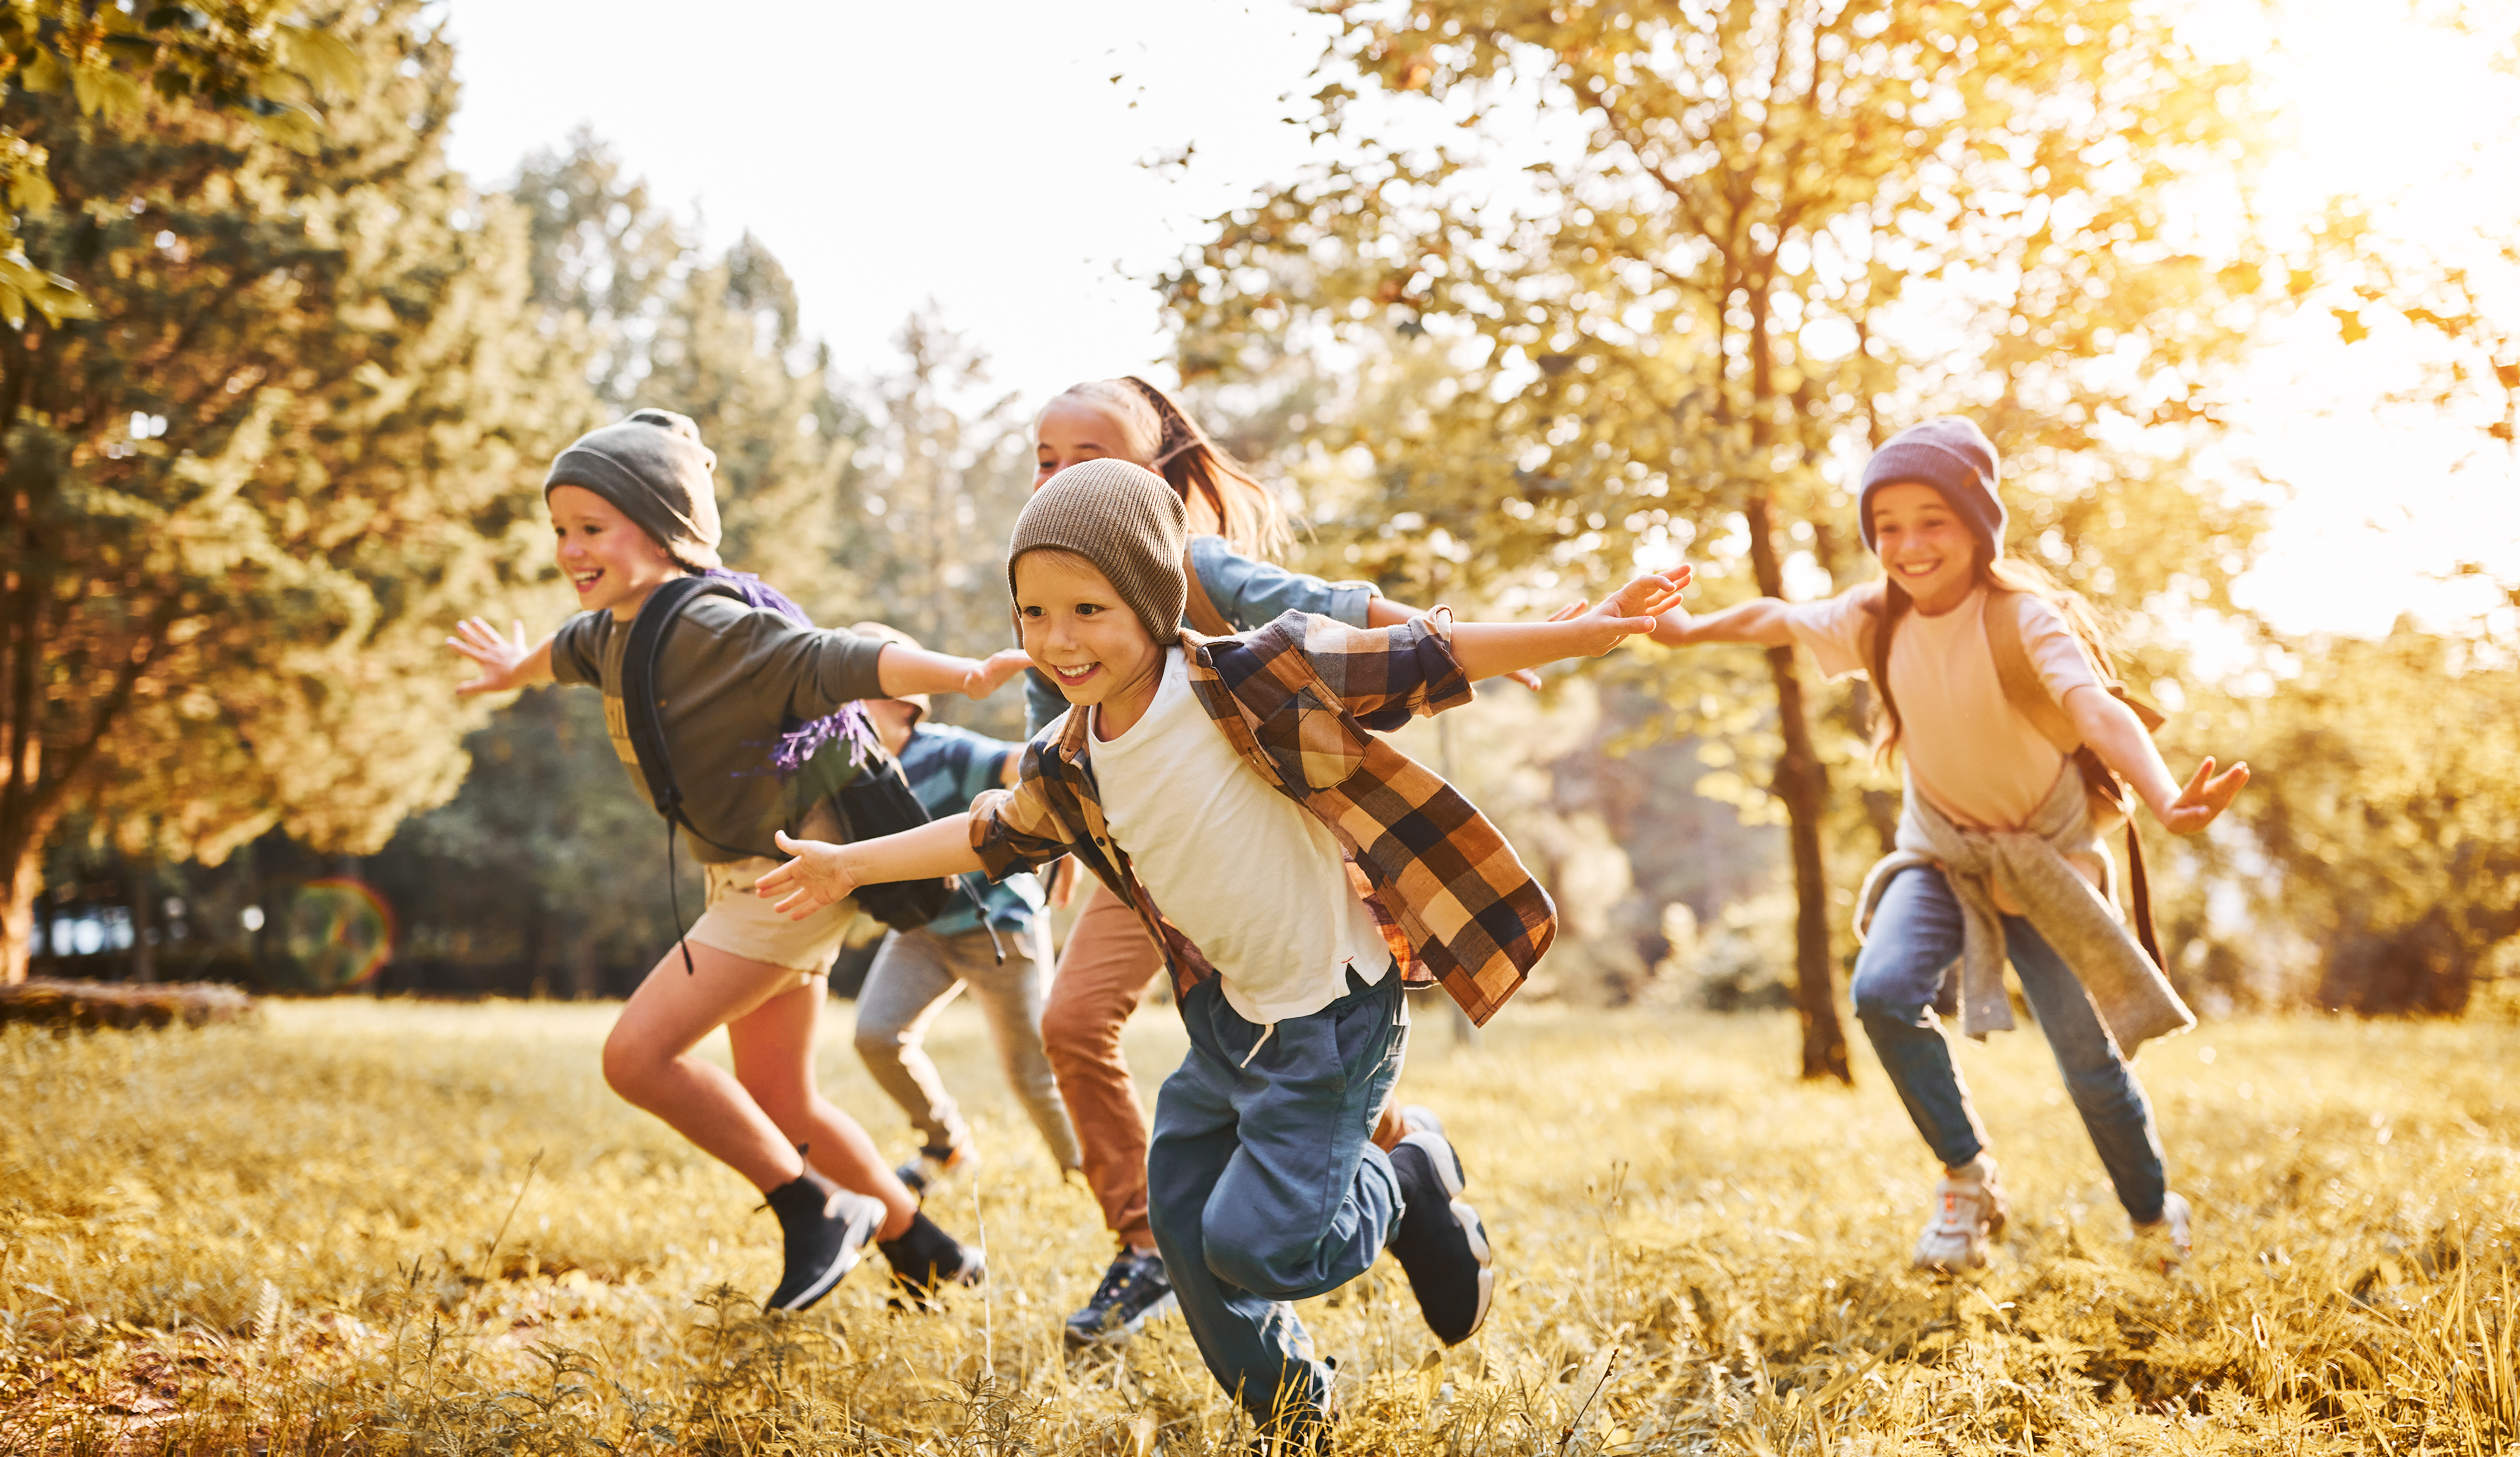 Spielende Kinder | Quelle: Shutterstock